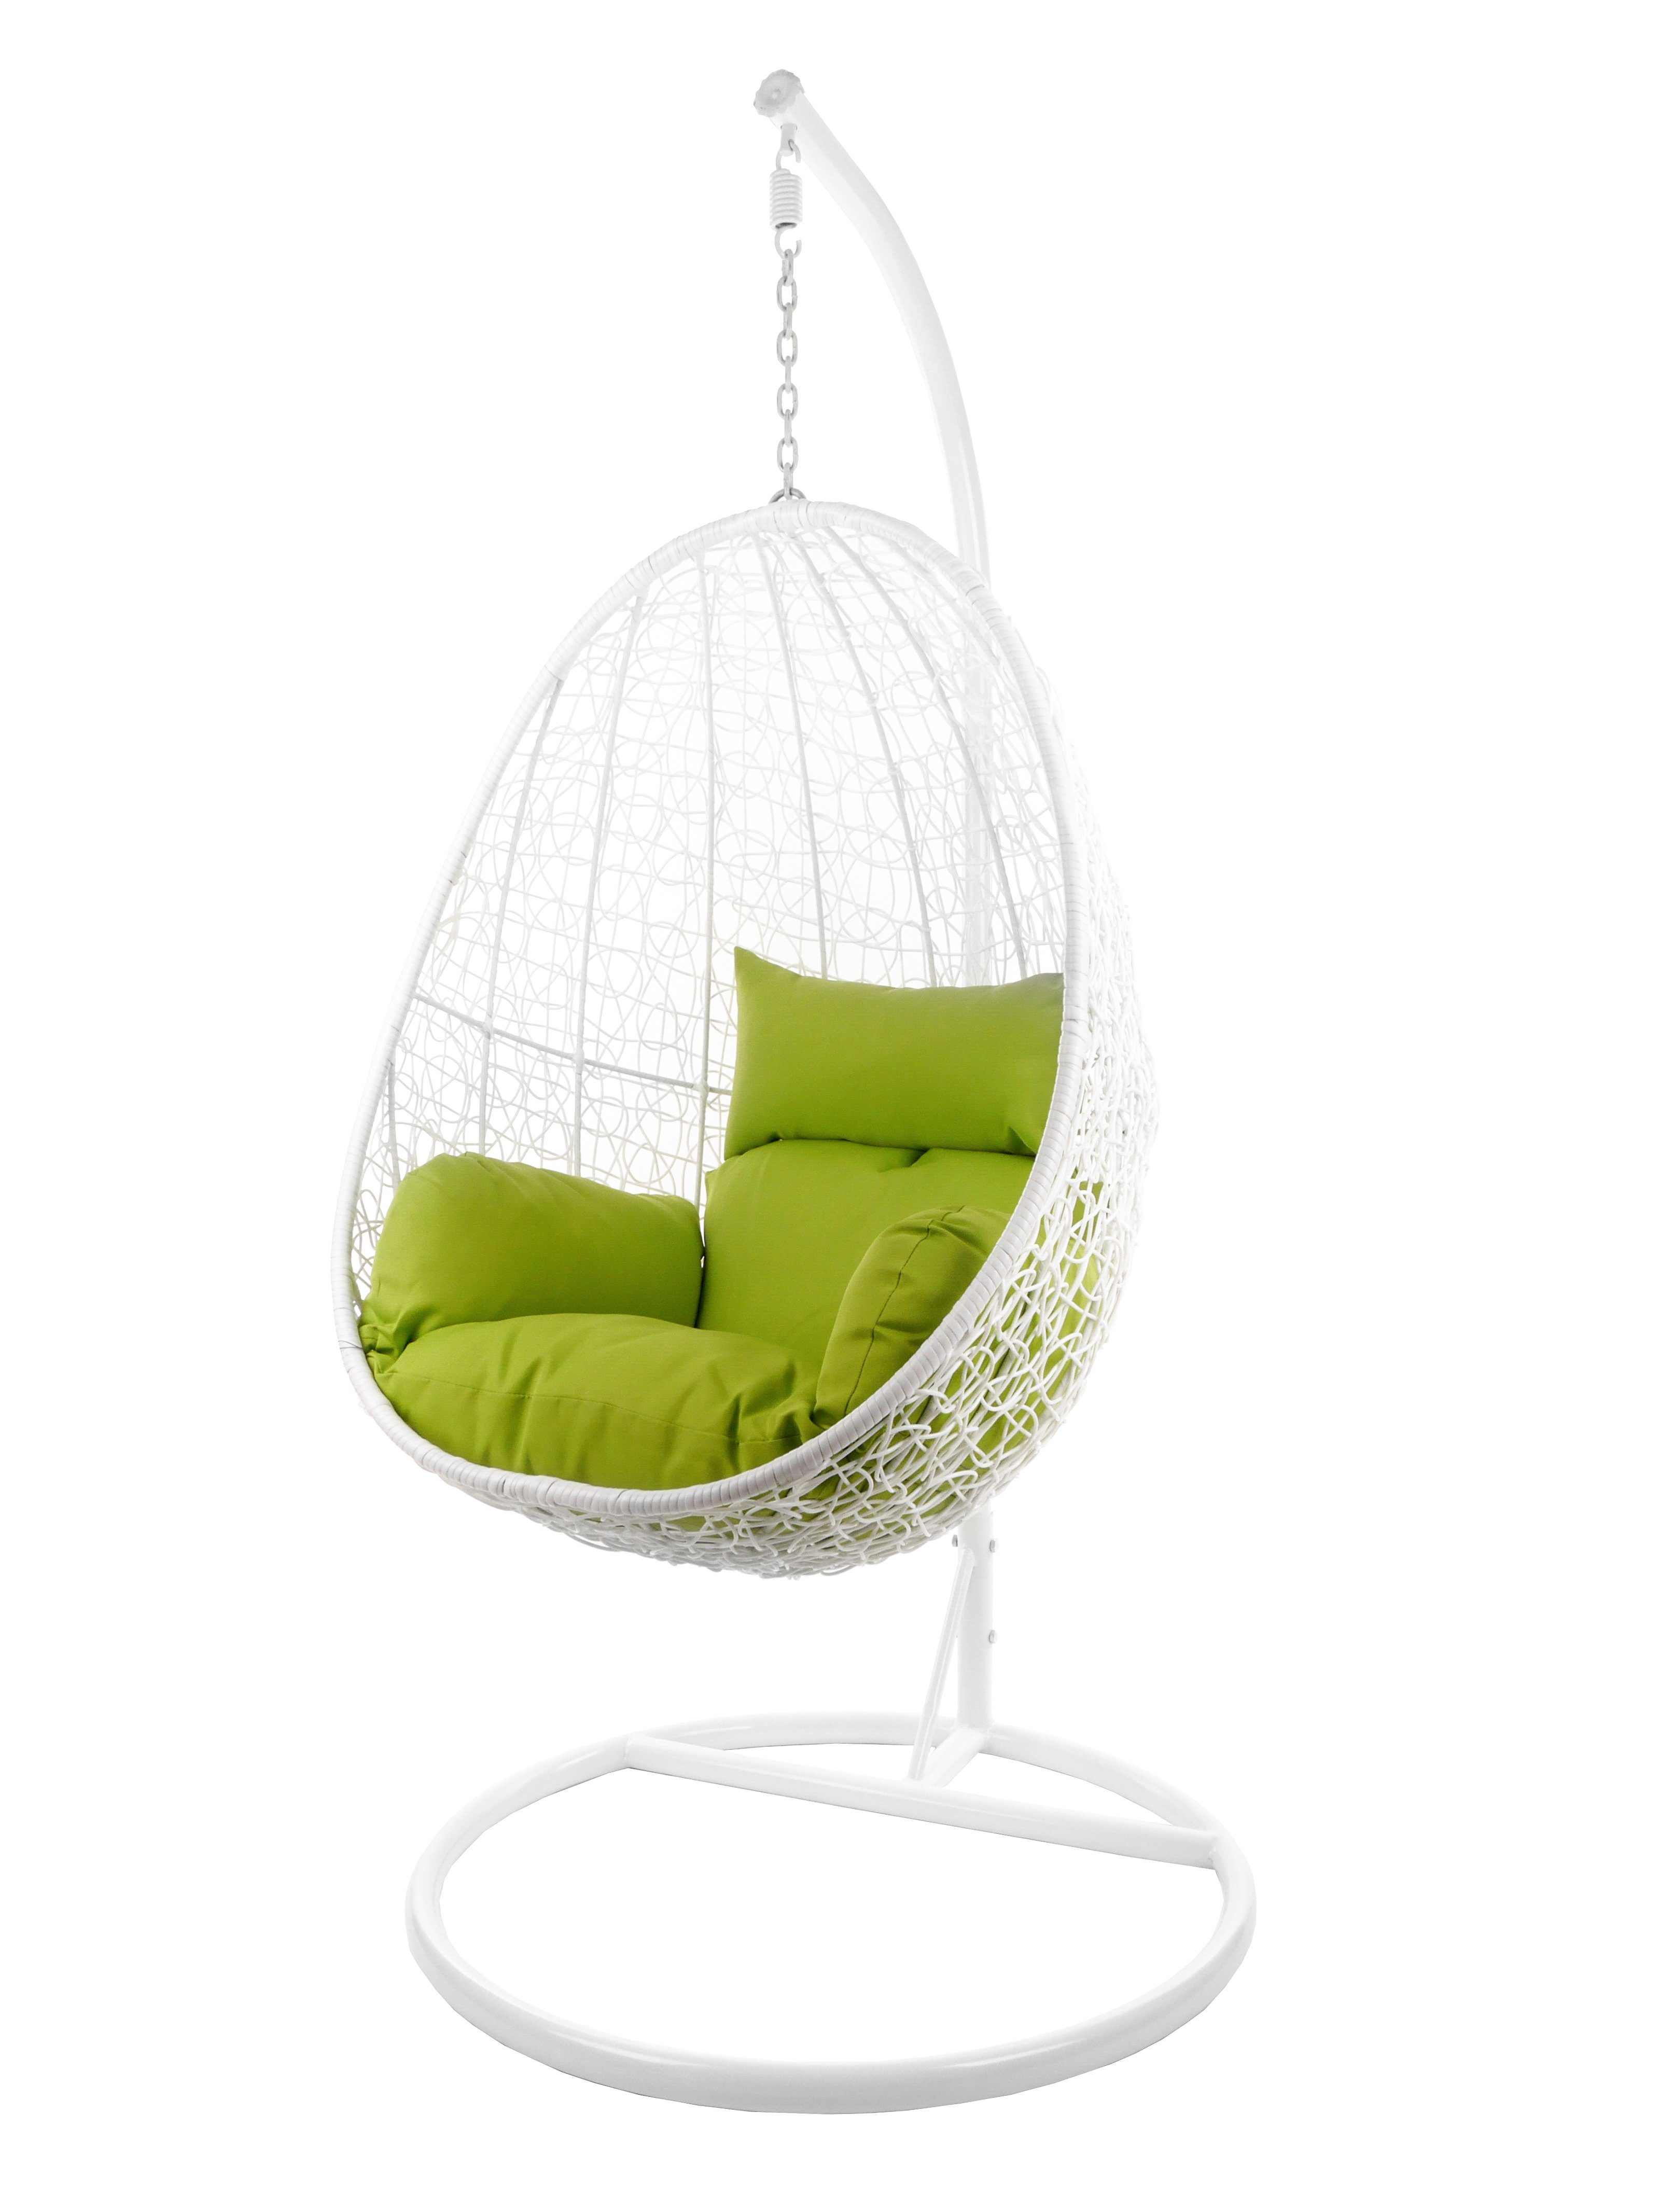 KIDEO Hängesessel Hängesessel CAPDEPERA weiß, Swing Chair mit Gestell und Kissen, Loungesessel, Hängesessel weiß apfelgrün (6068 apple green)